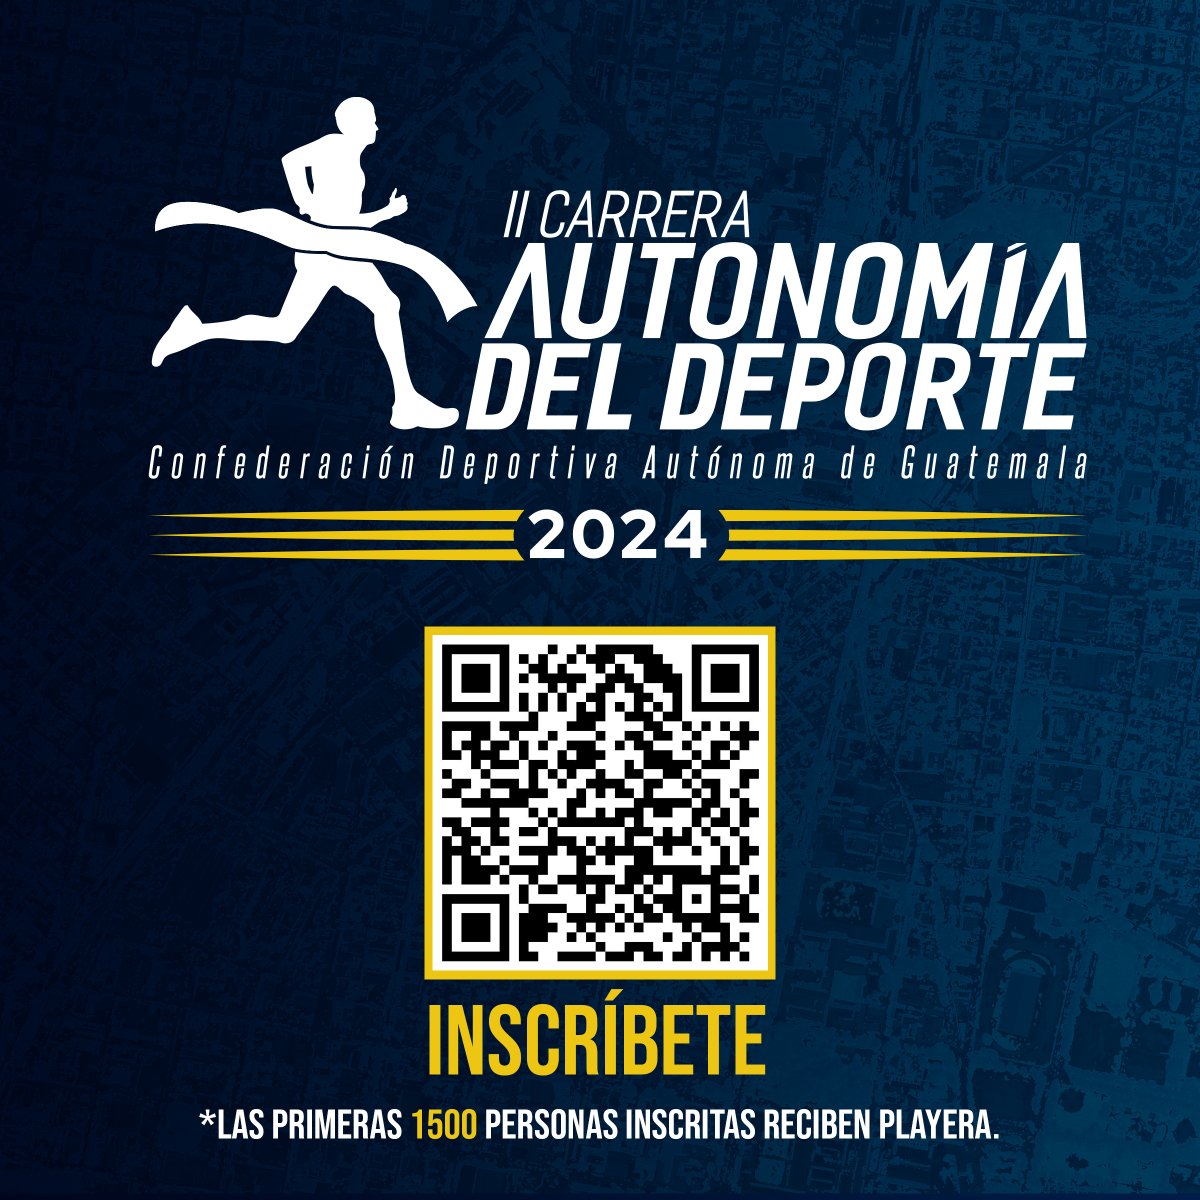 💙🏃‍♂️🏃‍♀️ No pierdan la oportunidad de ser parte de la II Carrera Autonomía del Deporte 👟 Escanea el código QR en la imagen o ingresa a este enlace para tu inscripción ➡️ cdag.com.gt/n4p3 ✅ Las primeras 1,500 personas inscritas recibirán una playera. #PasiónPorGuatemala